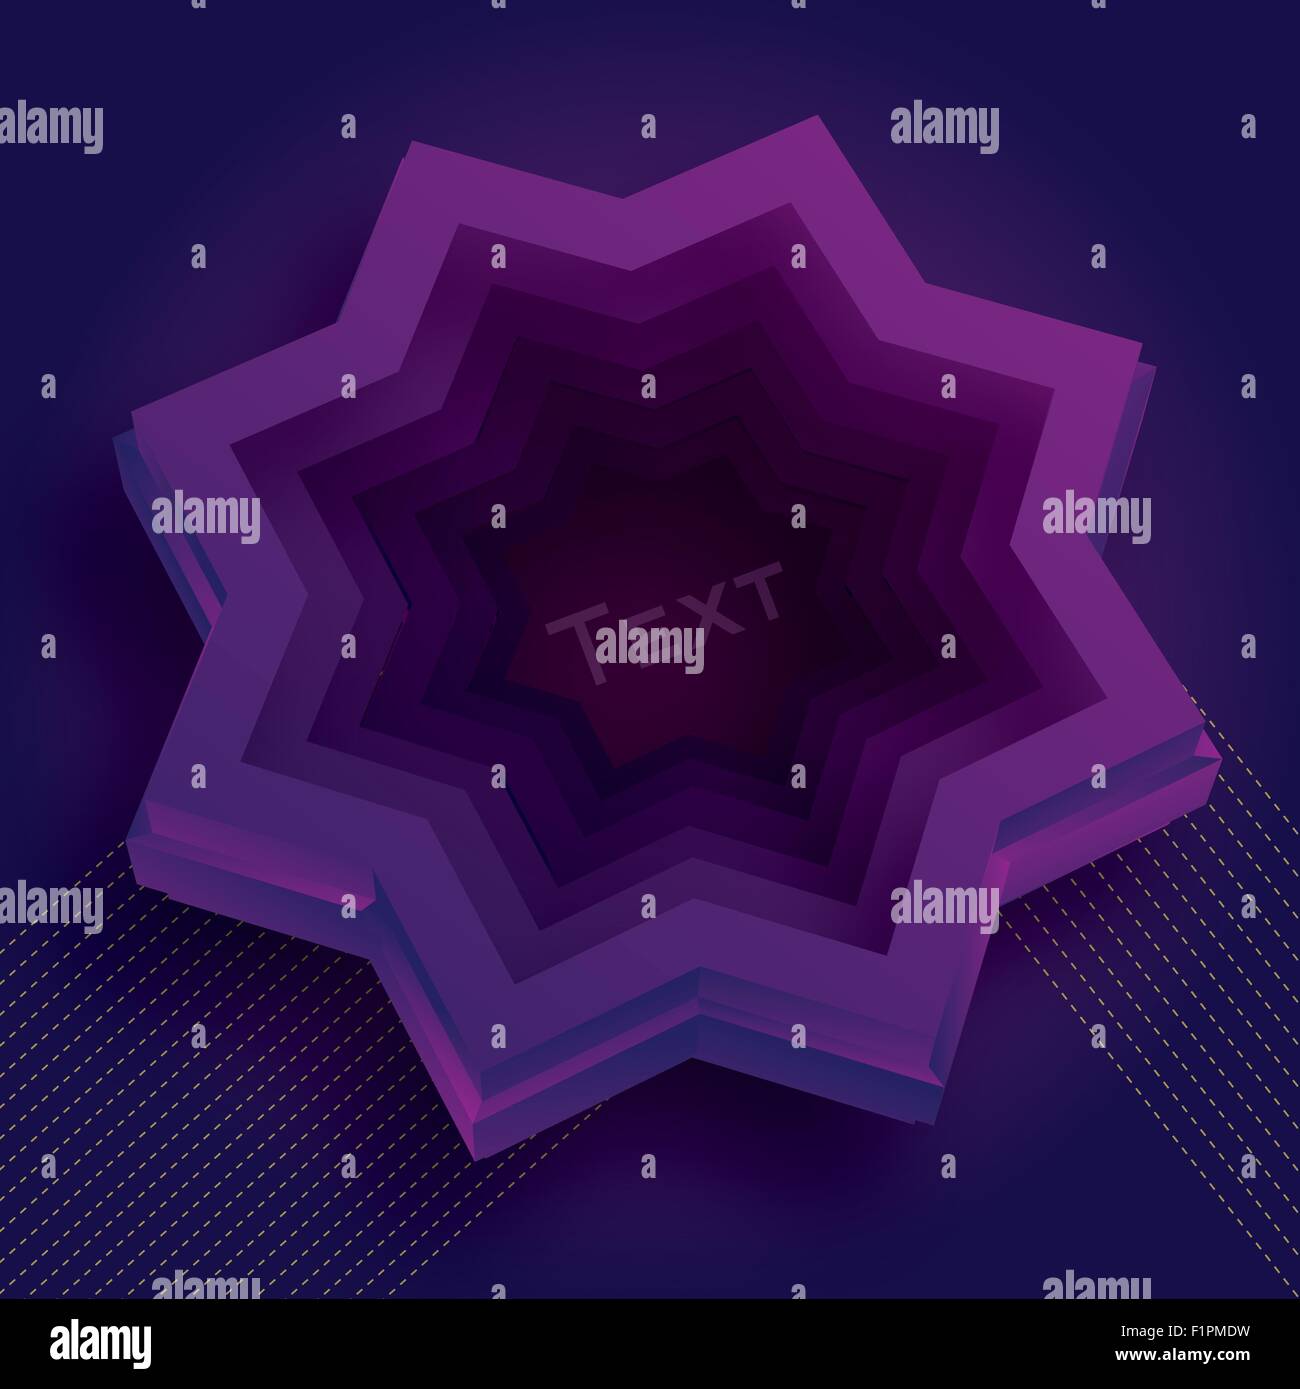 Vektor-Illustration mit 3d purple Star und Platz für text Stock Vektor